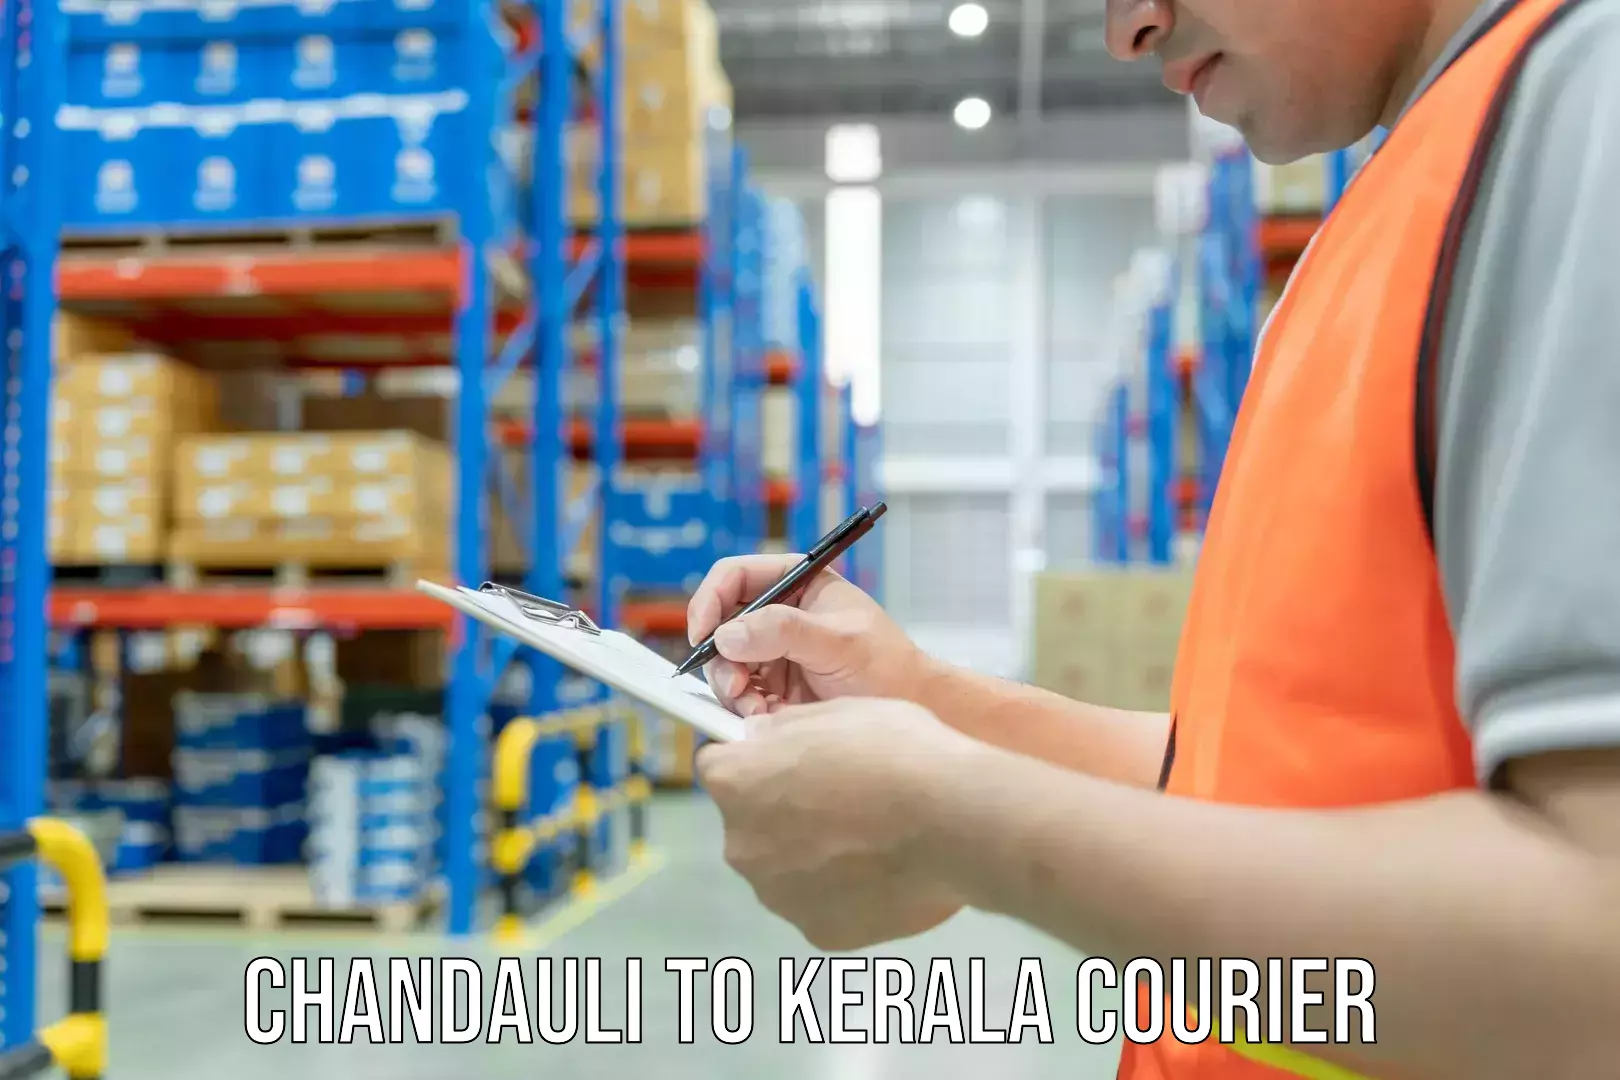 Quality courier partnerships Chandauli to Kerala